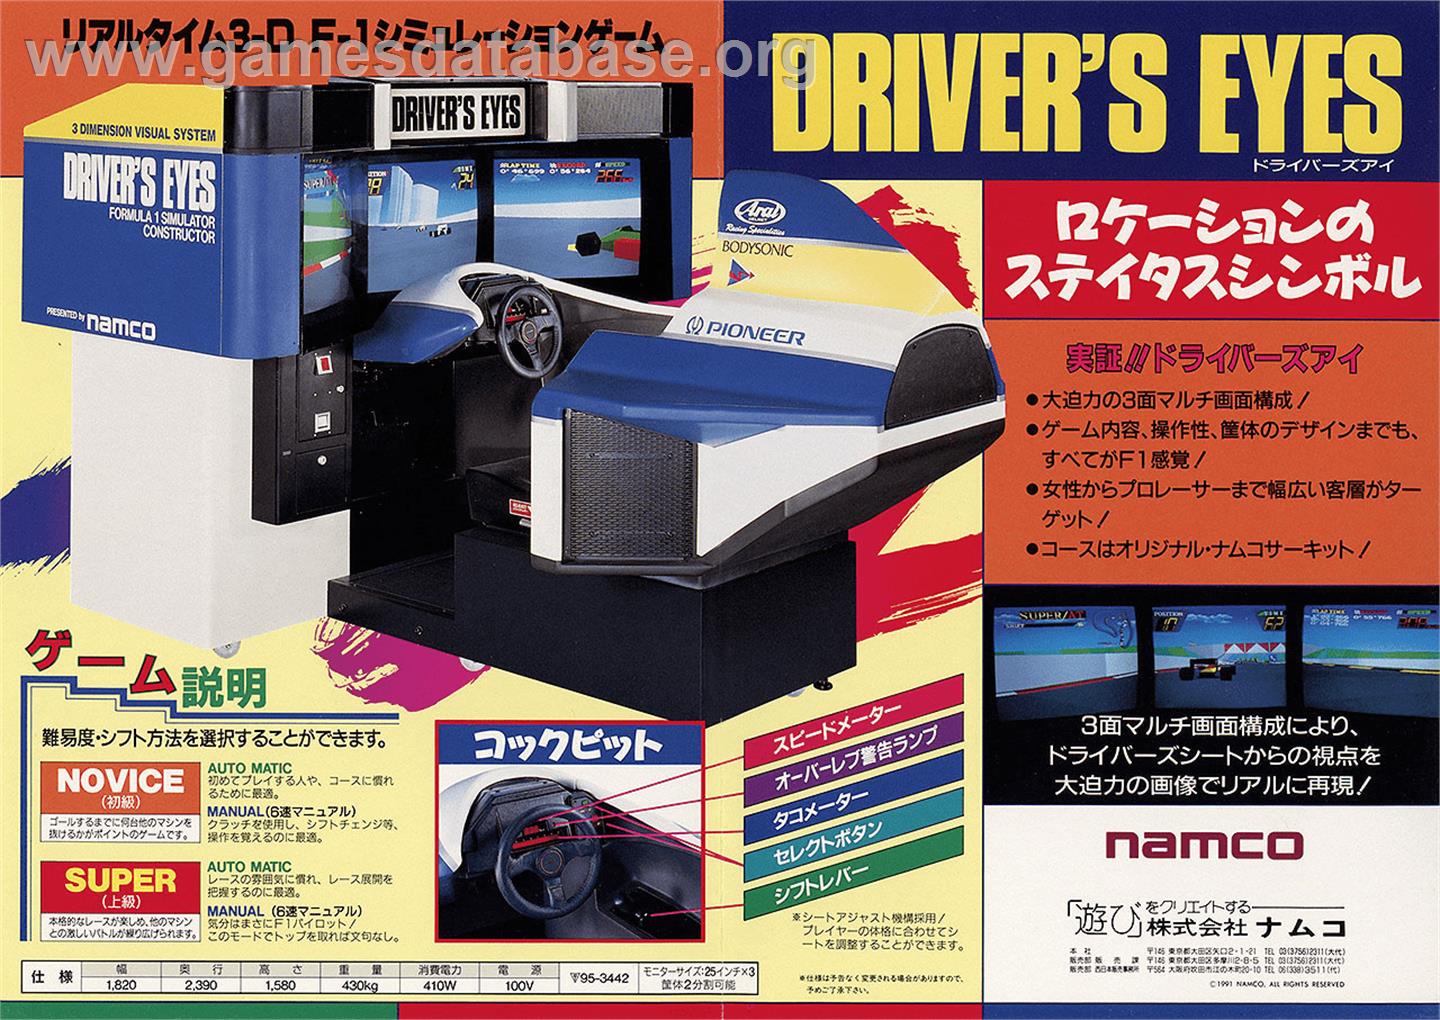 Driver's Eyes - Arcade - Artwork - Advert